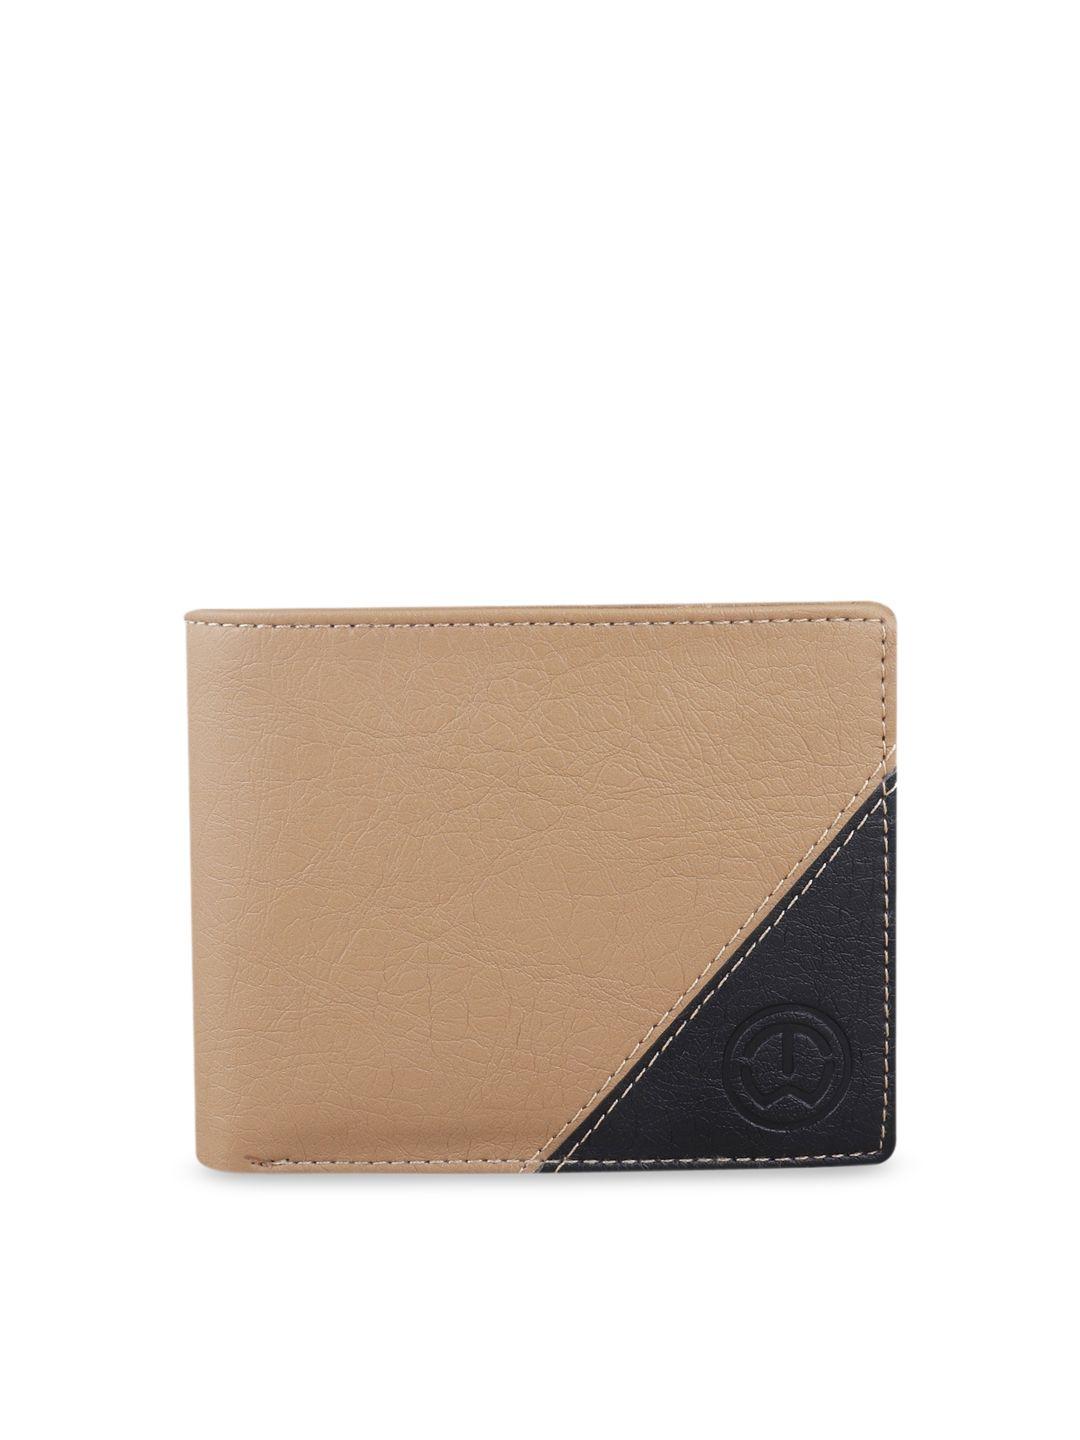 tnw men beige & black colorblocked two fold wallet